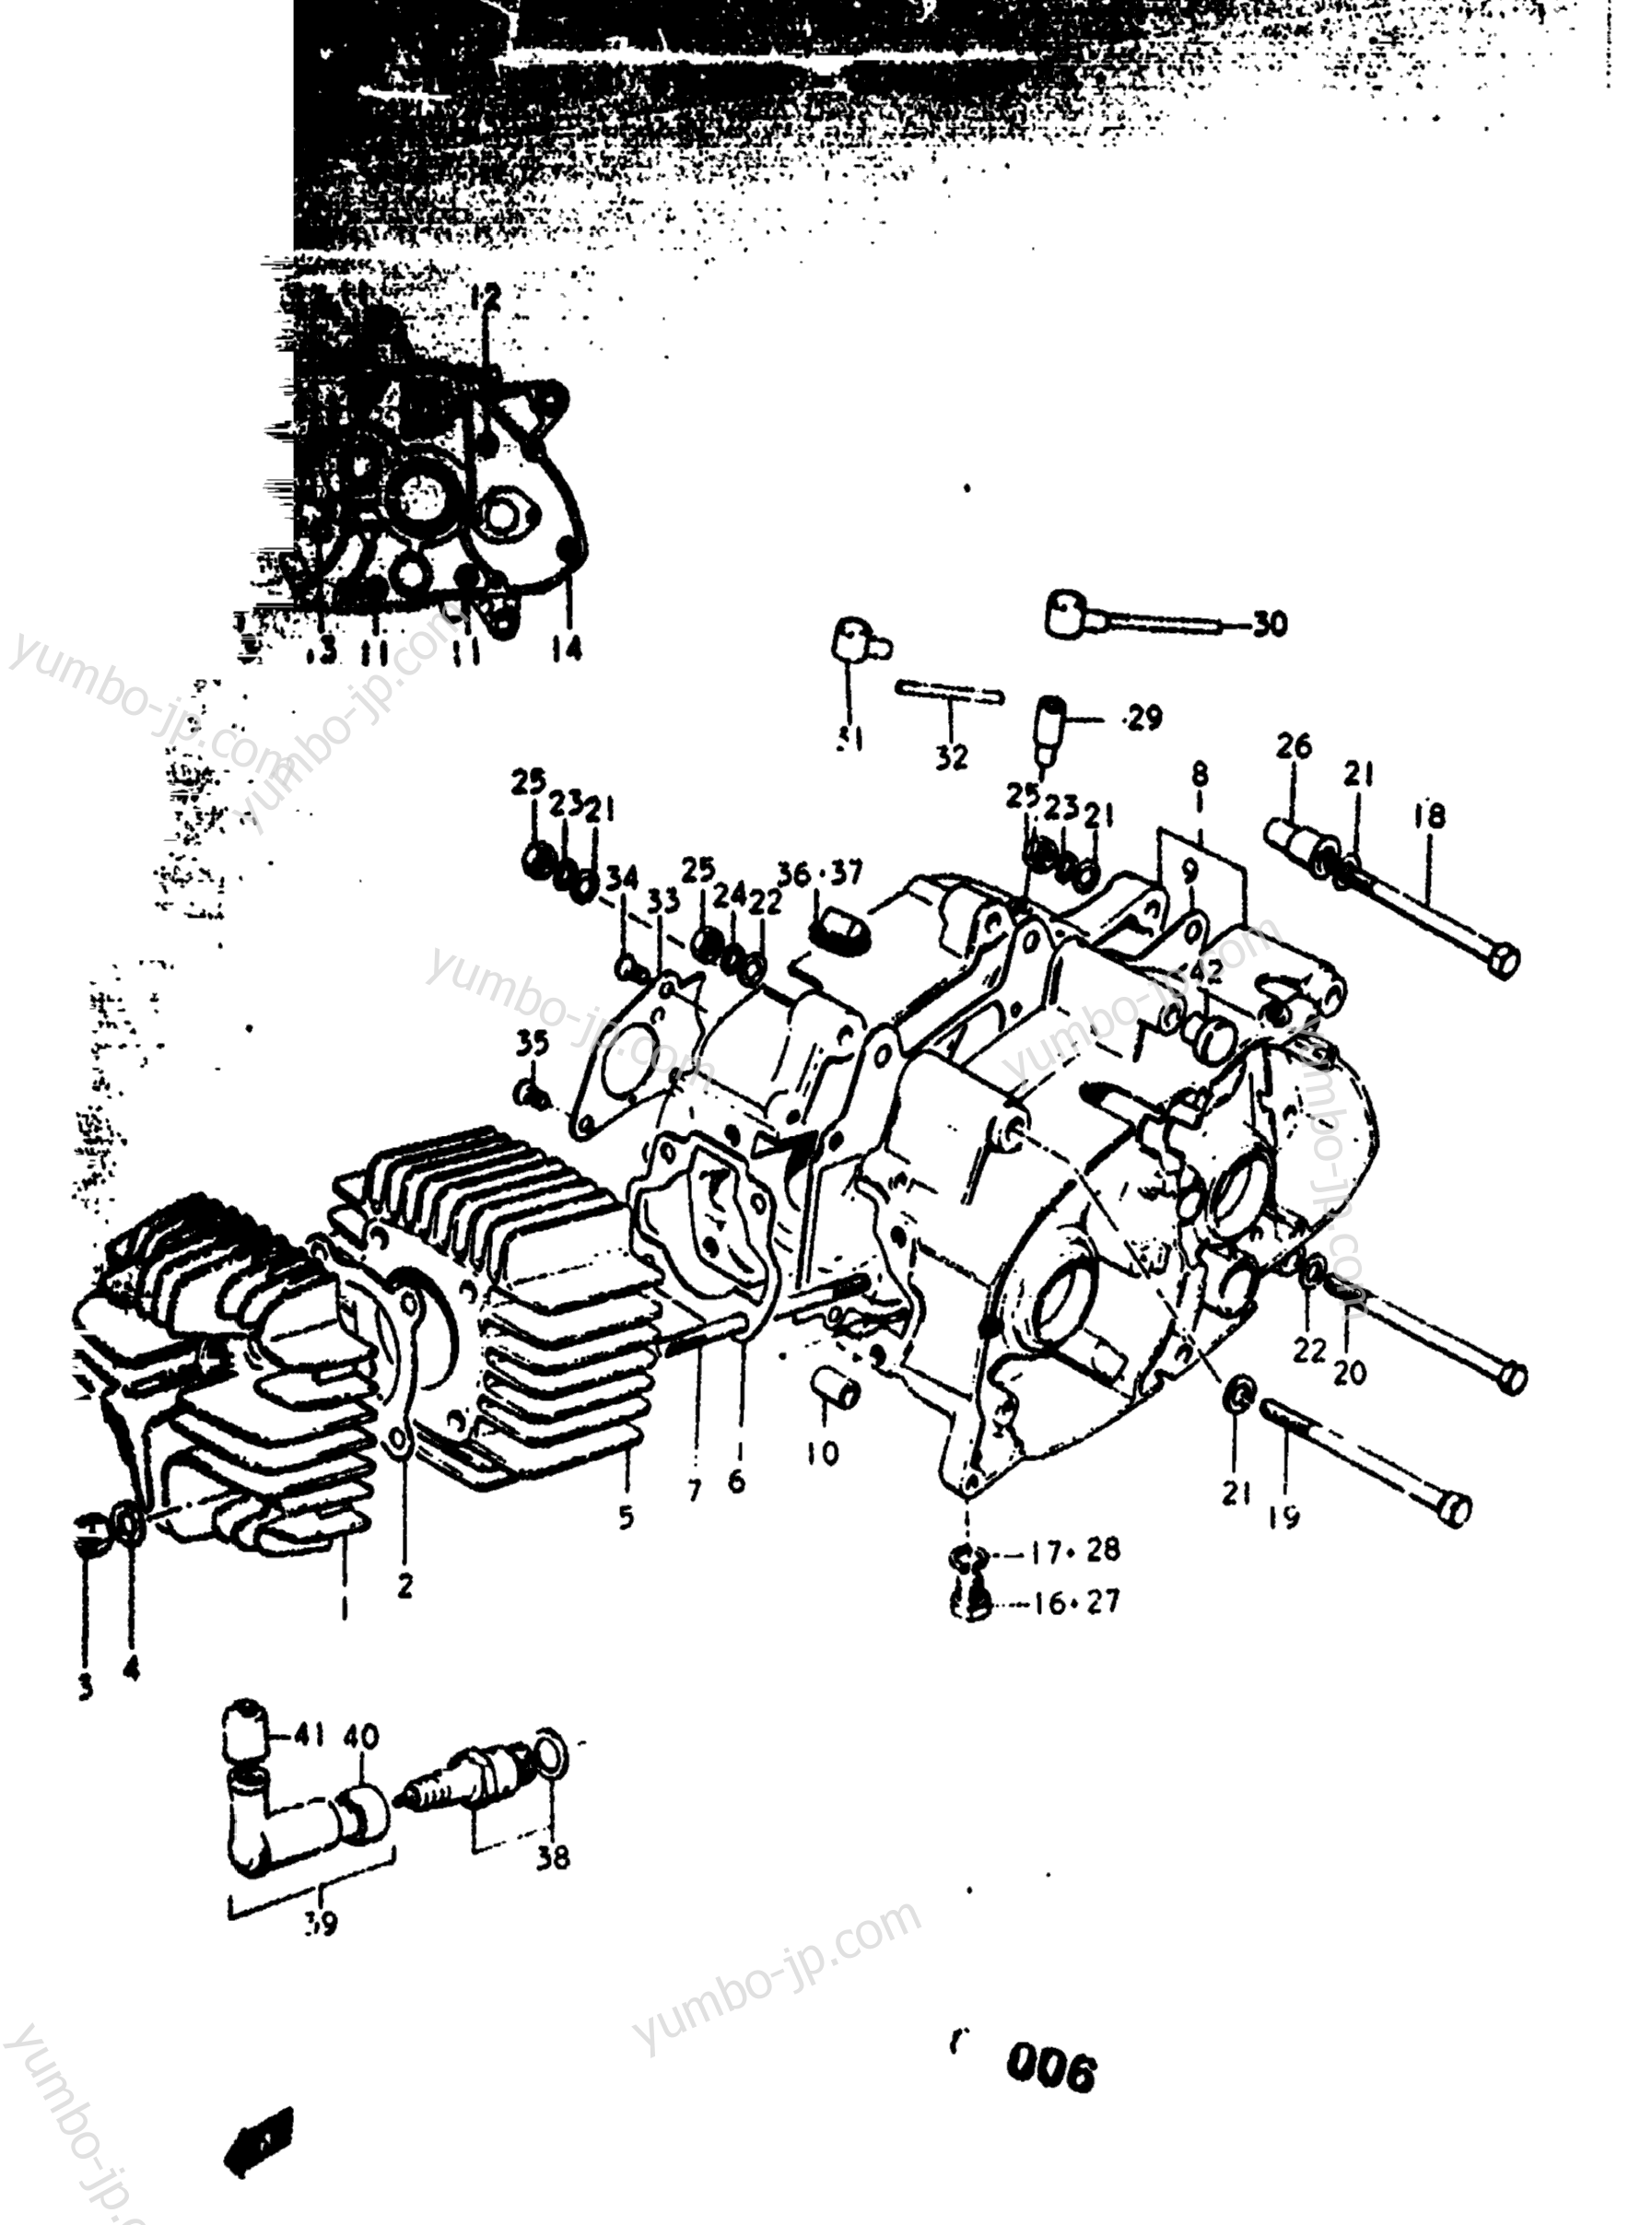 Cylinder - Crankcase for motorcycles SUZUKI RV90 1977 year